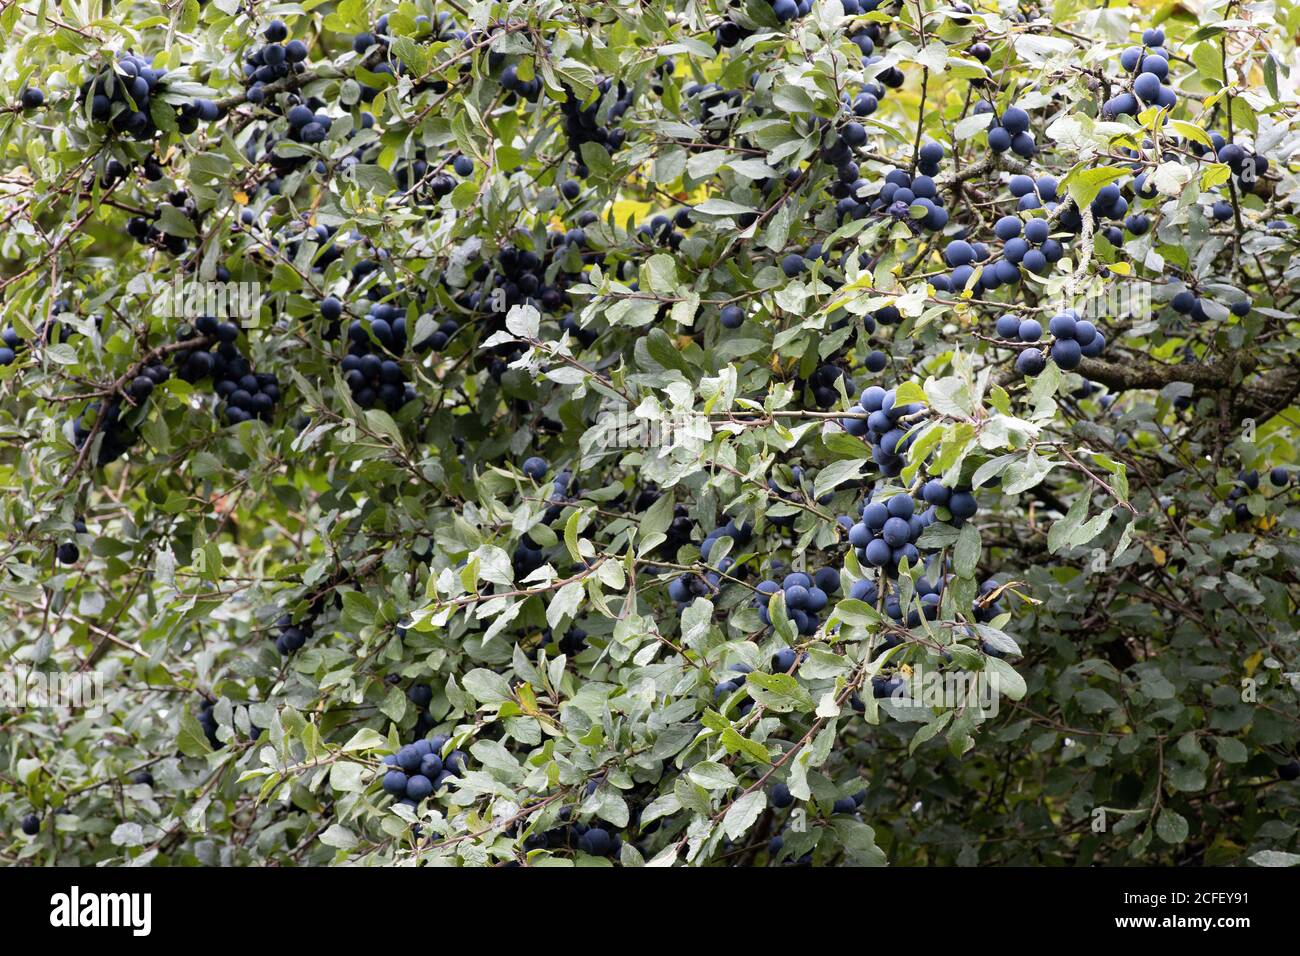 Sloe berries Stock Photo